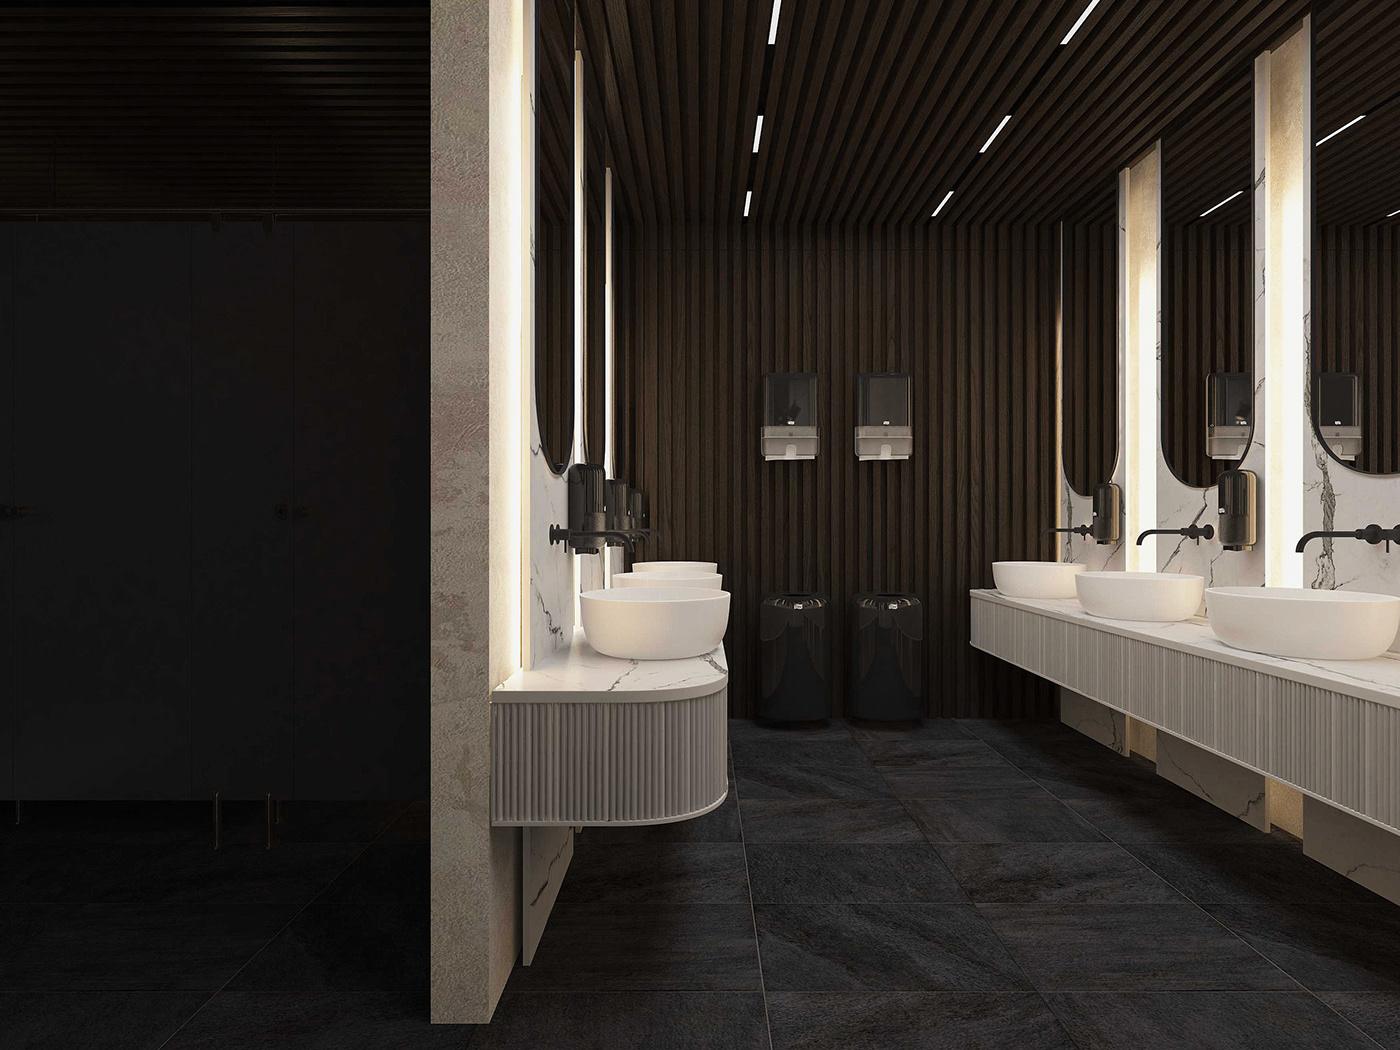 toilet public toilet interior design  3ds max PUBLIC PLACE architecture Interior Restroom Interior public toilet design Restroom Design